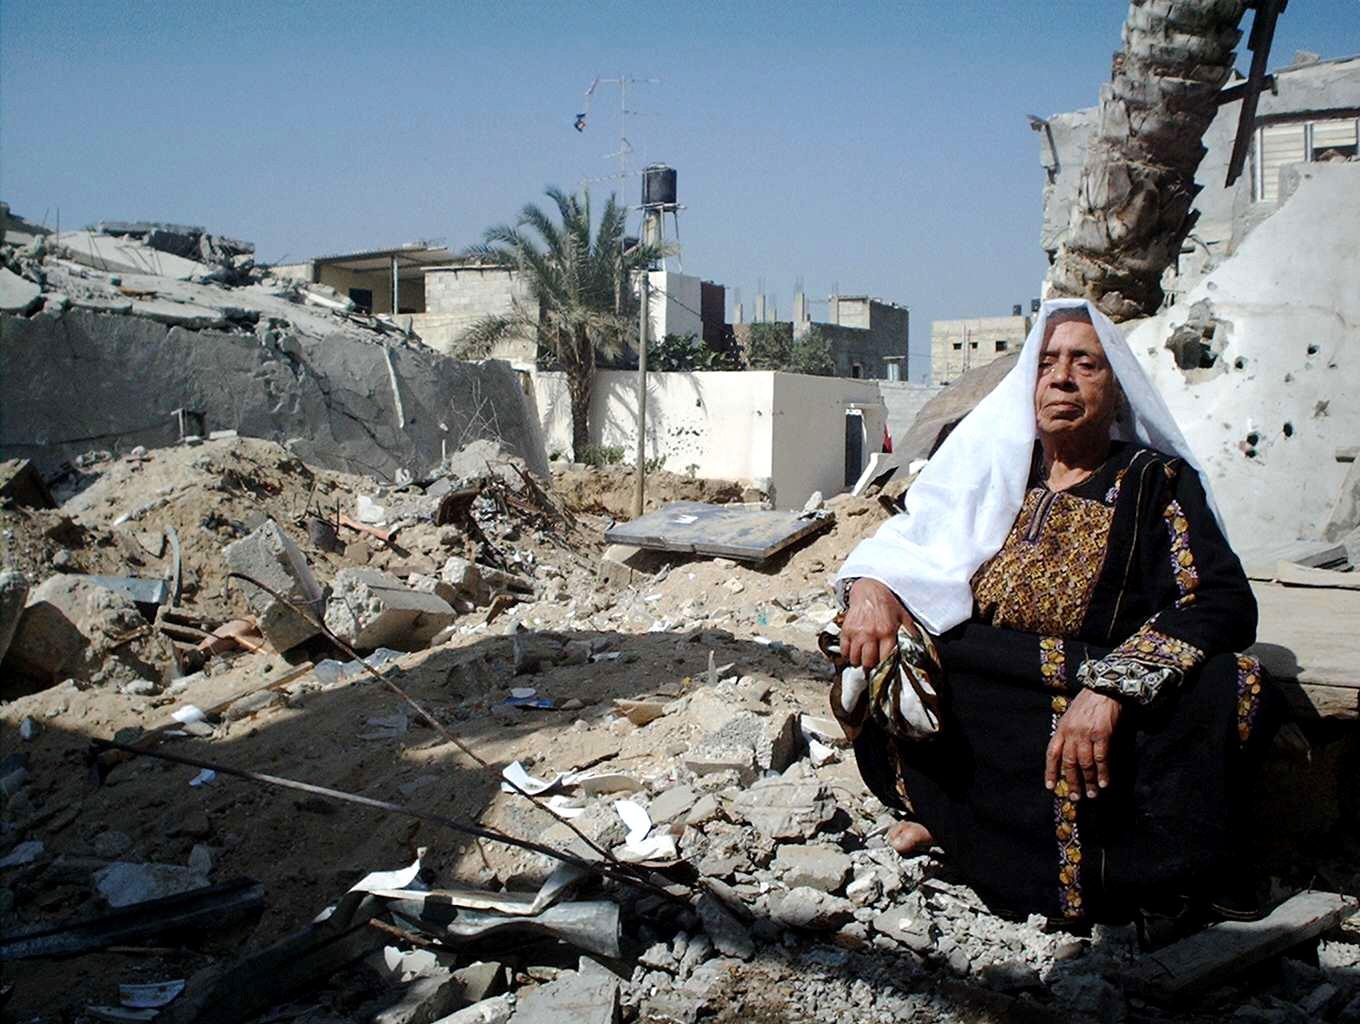 L'Angolo della poesia. “Il quadro della vita”... sulla Striscia di Gaza